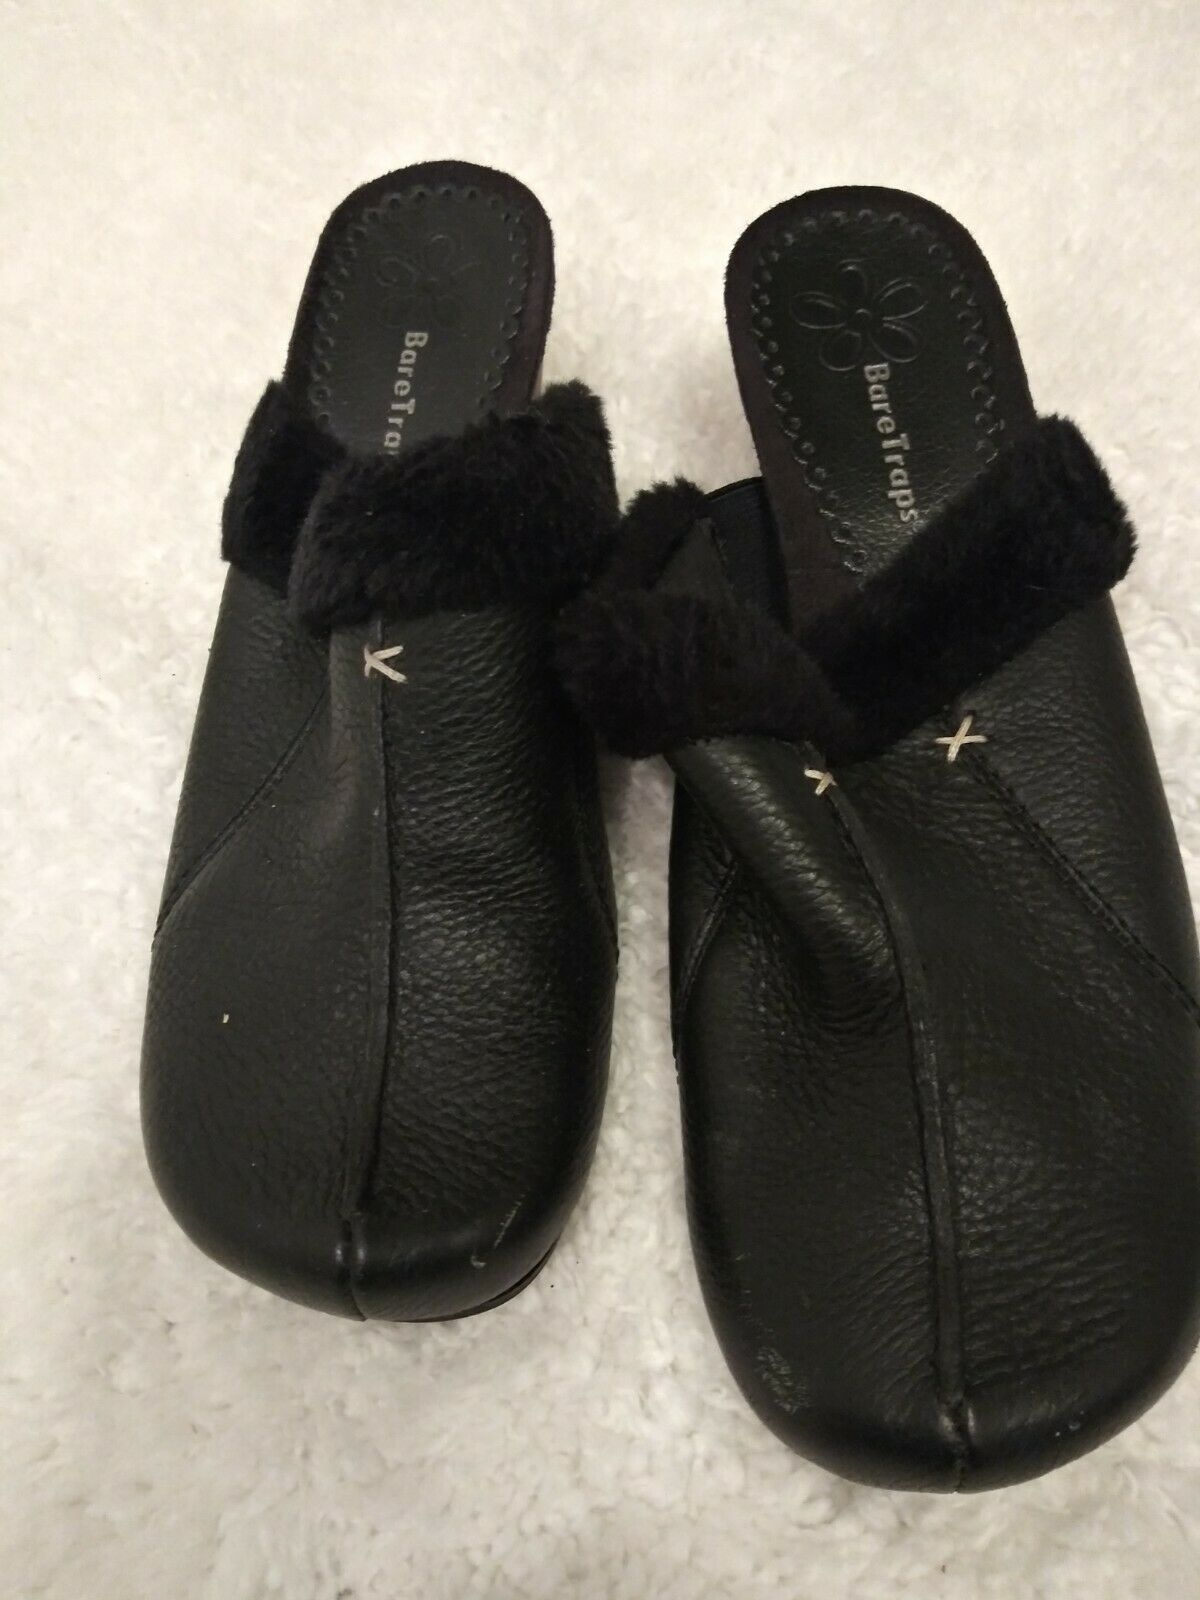 Black Platform Shoes With Fur Trim Size 7